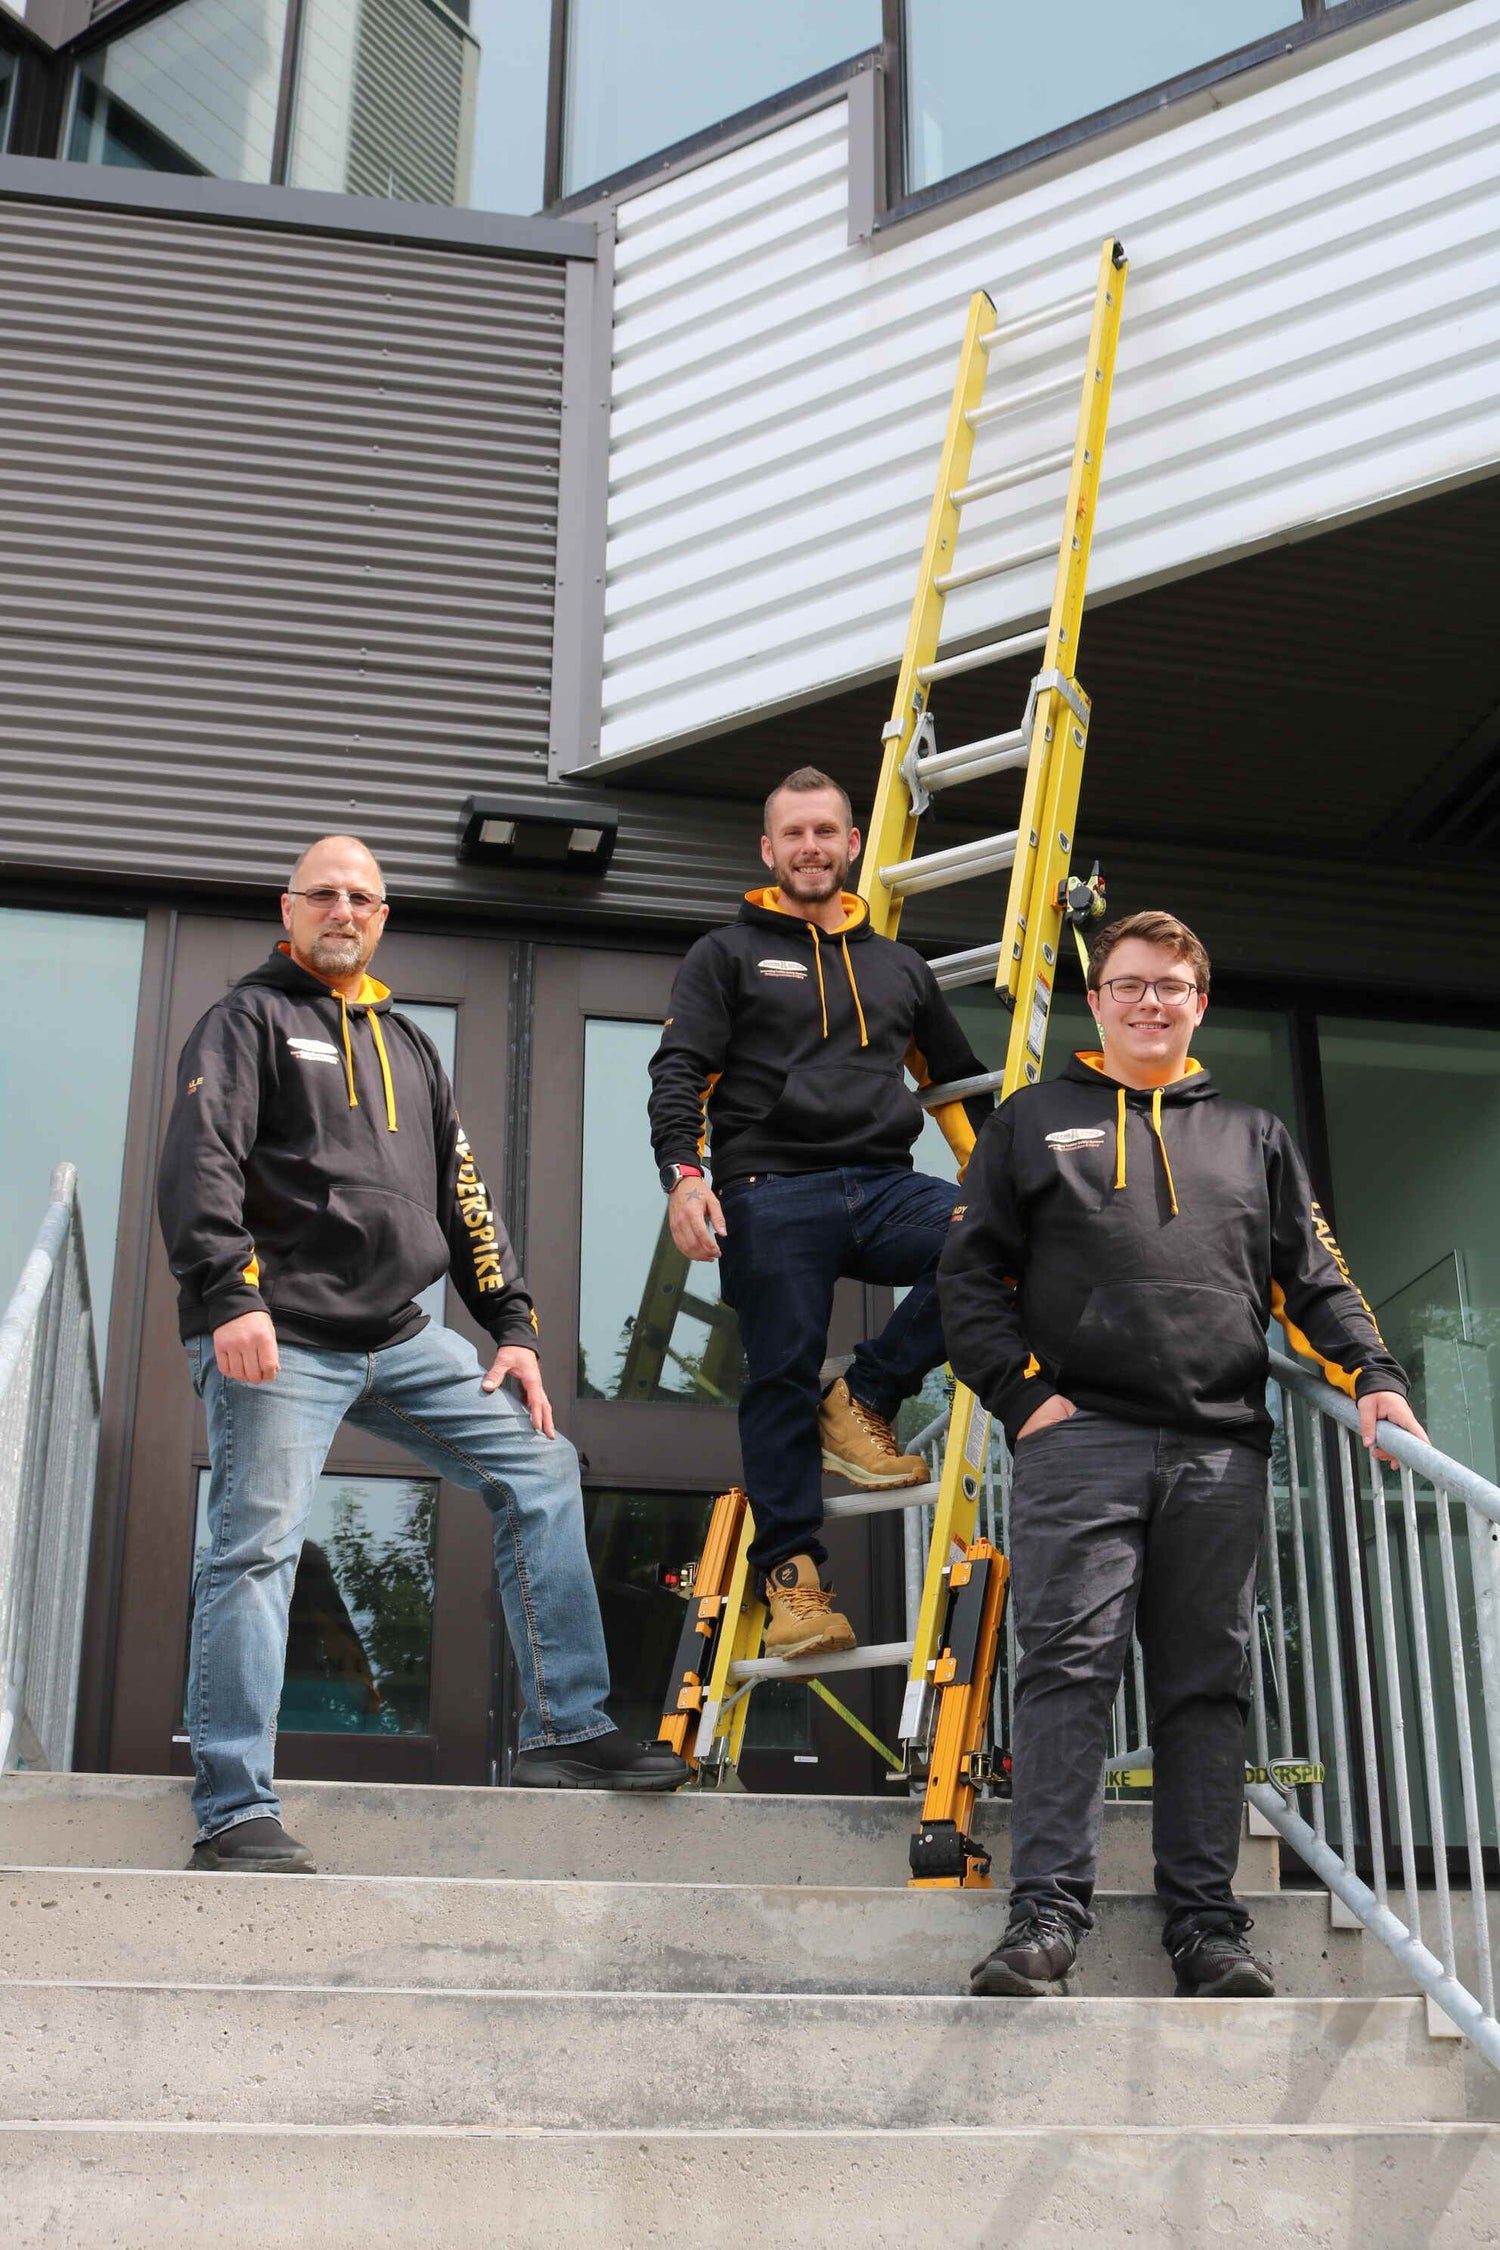 Ladderspikes team standing